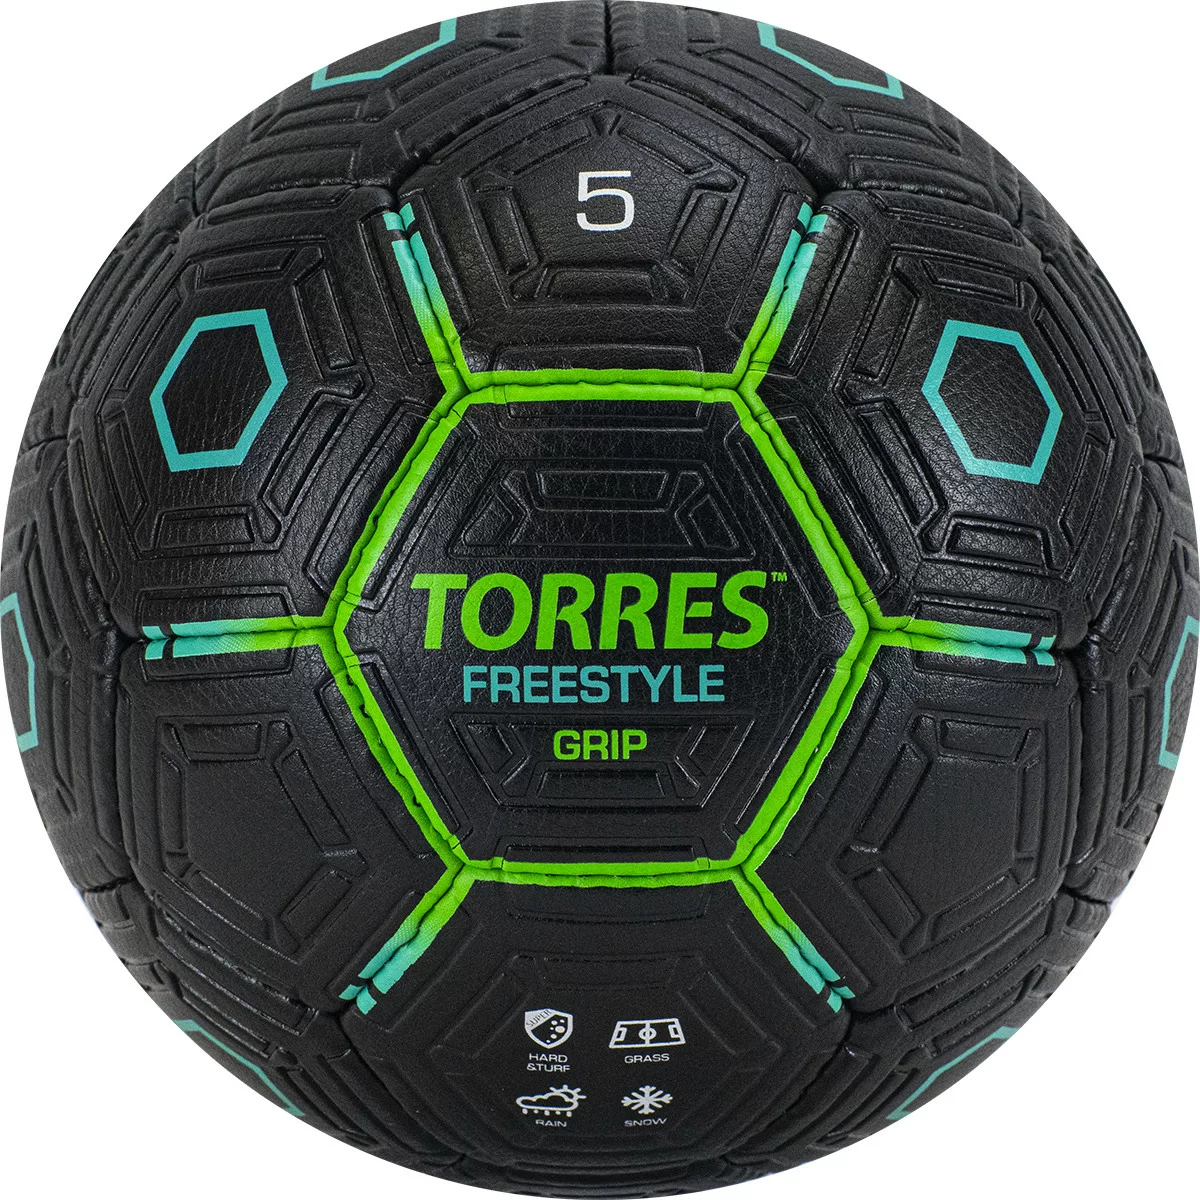 Фото Мяч футбольный Torres Freestyle Grip р.5 32 панели PU черно-зеленый  F320765 со склада магазина СпортСЕ